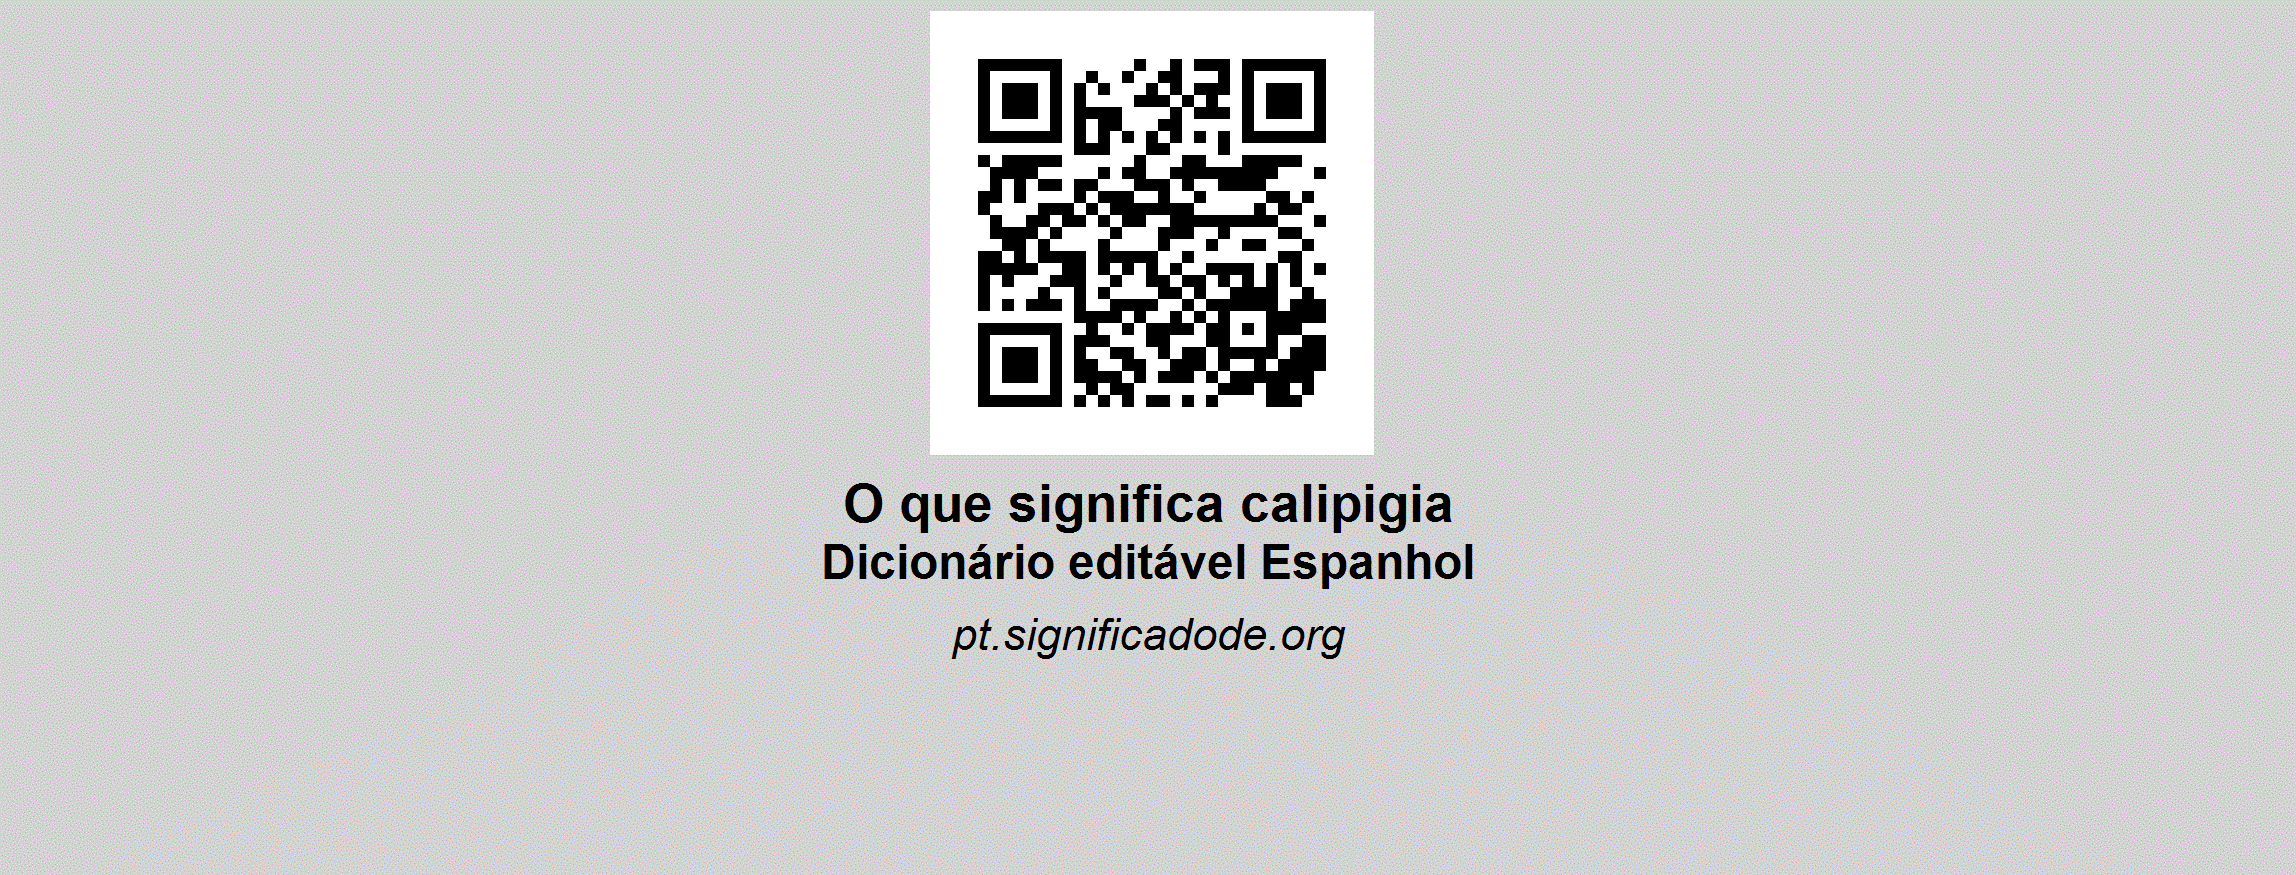 CALIPIGIA - Espanhol, dicionário colaborativo